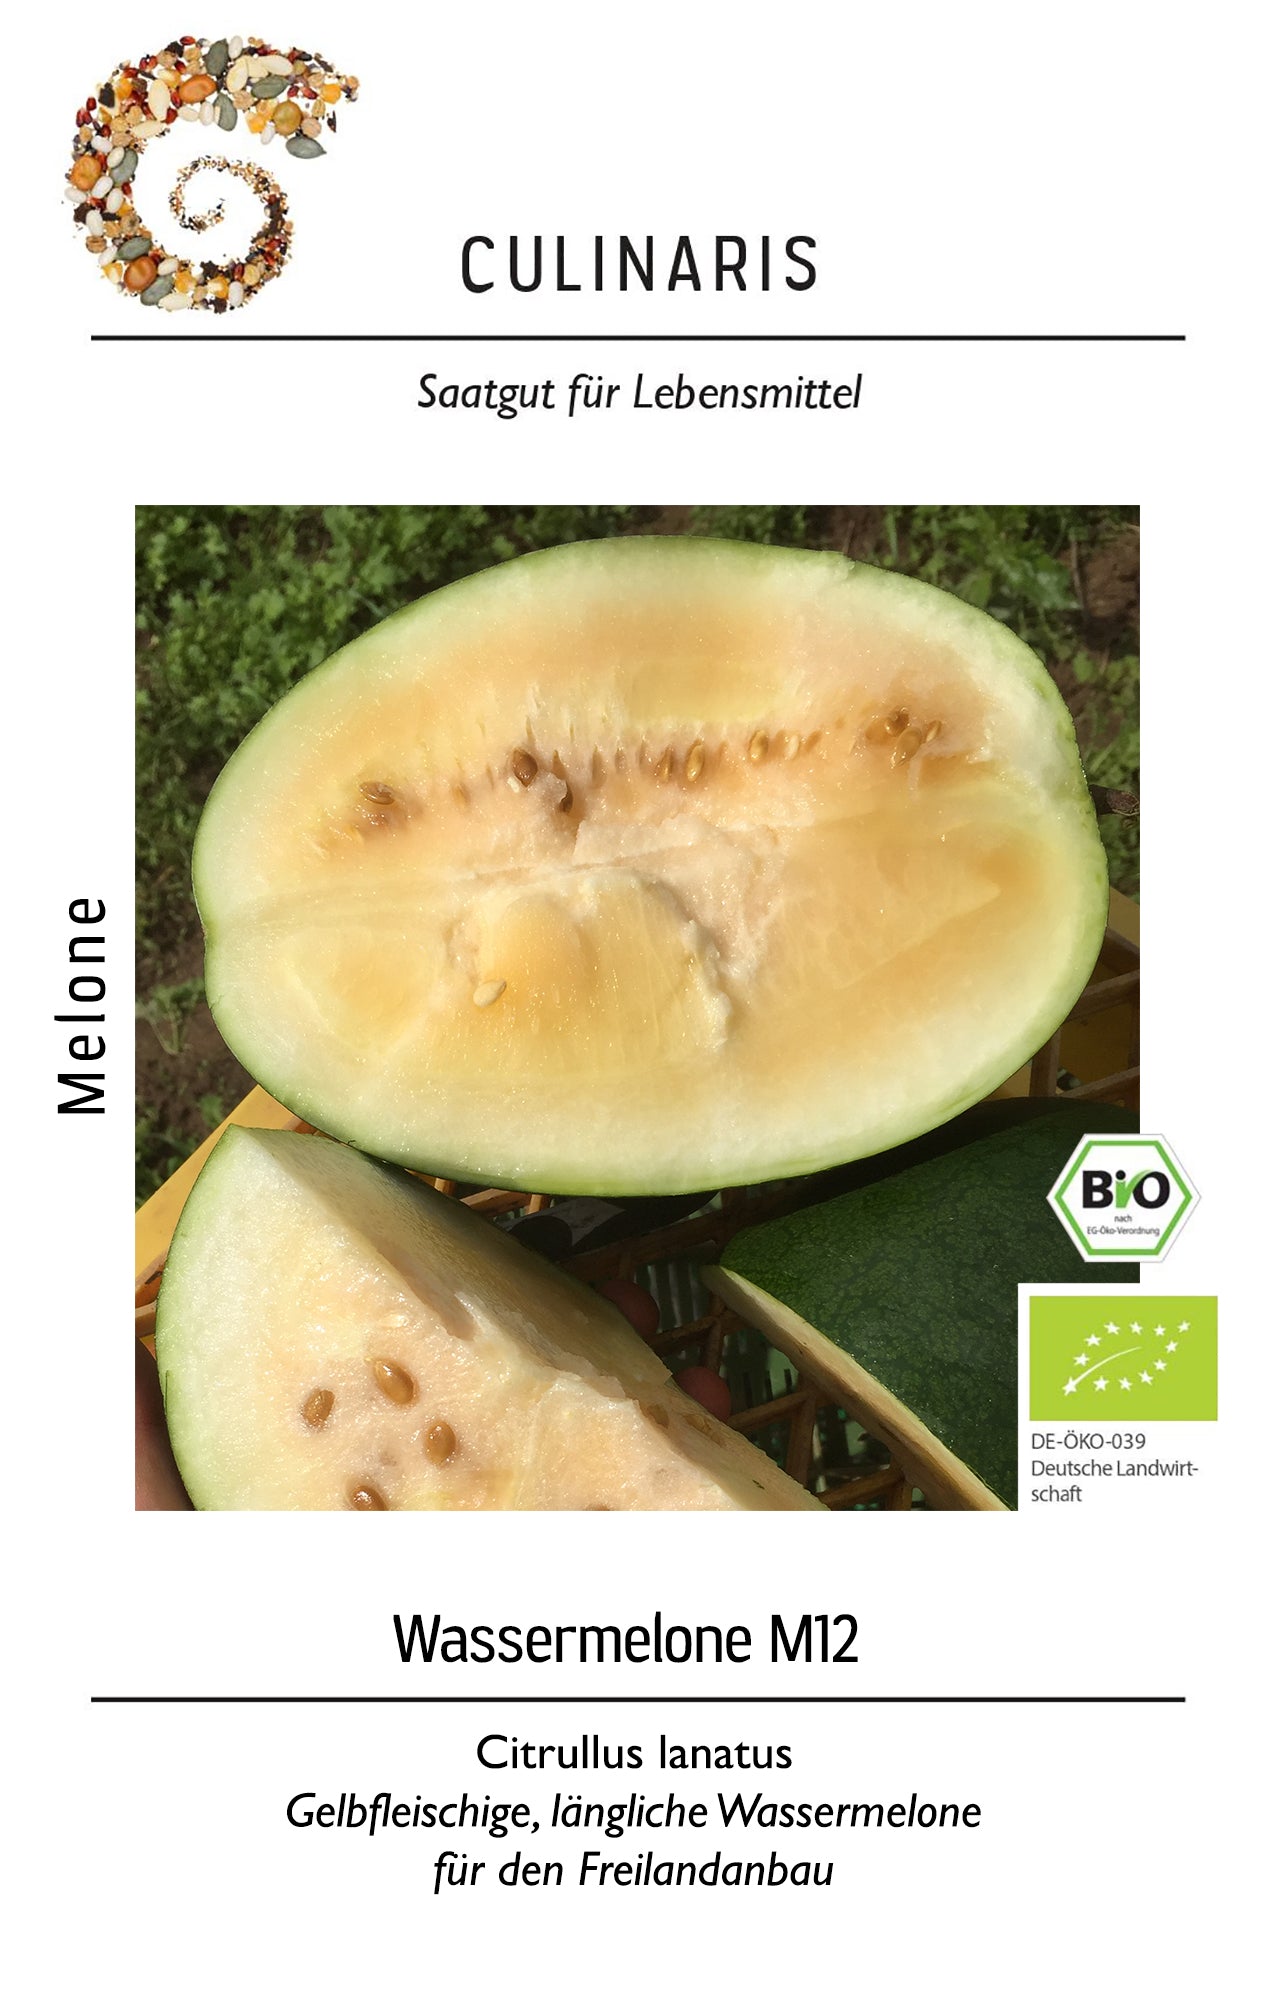 Wassermelone M12 | BIO Melonensamen von Culinaris